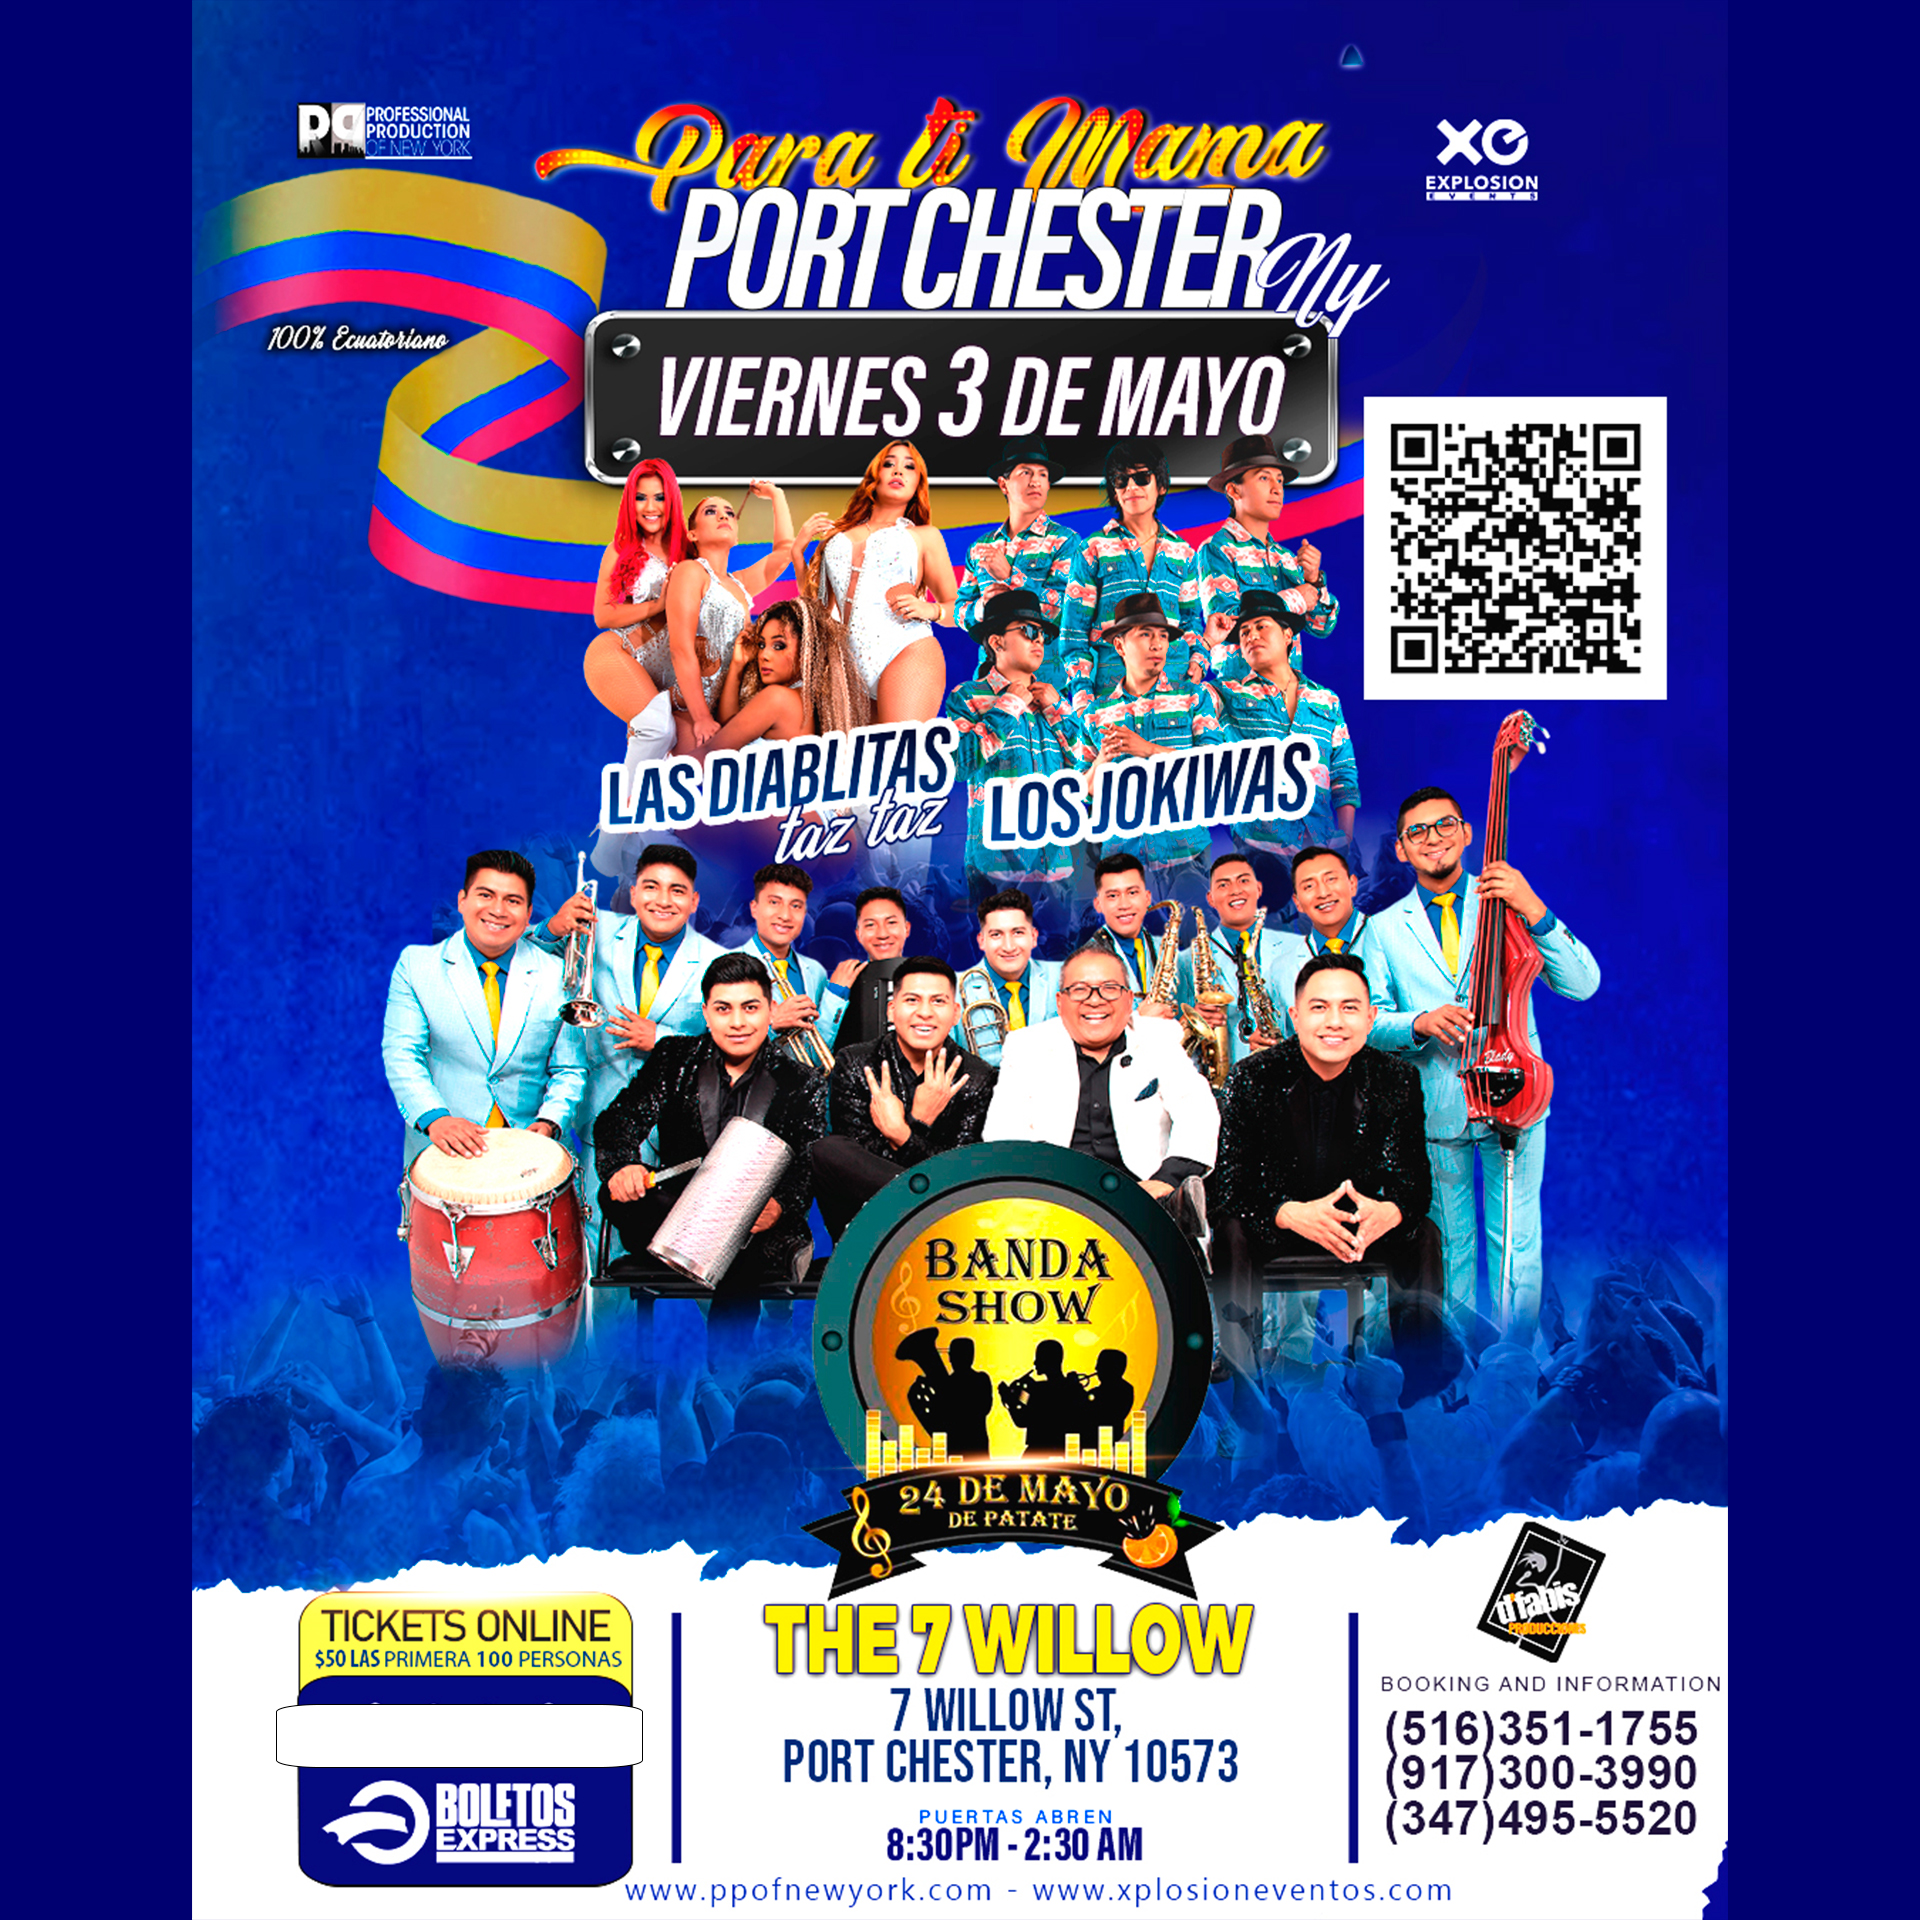 Port Chester, NY Celebrando el mes de Mama en concierto,Banda 24 de mayo,Jokiwas, Las Diablitas taz taz y mas!!